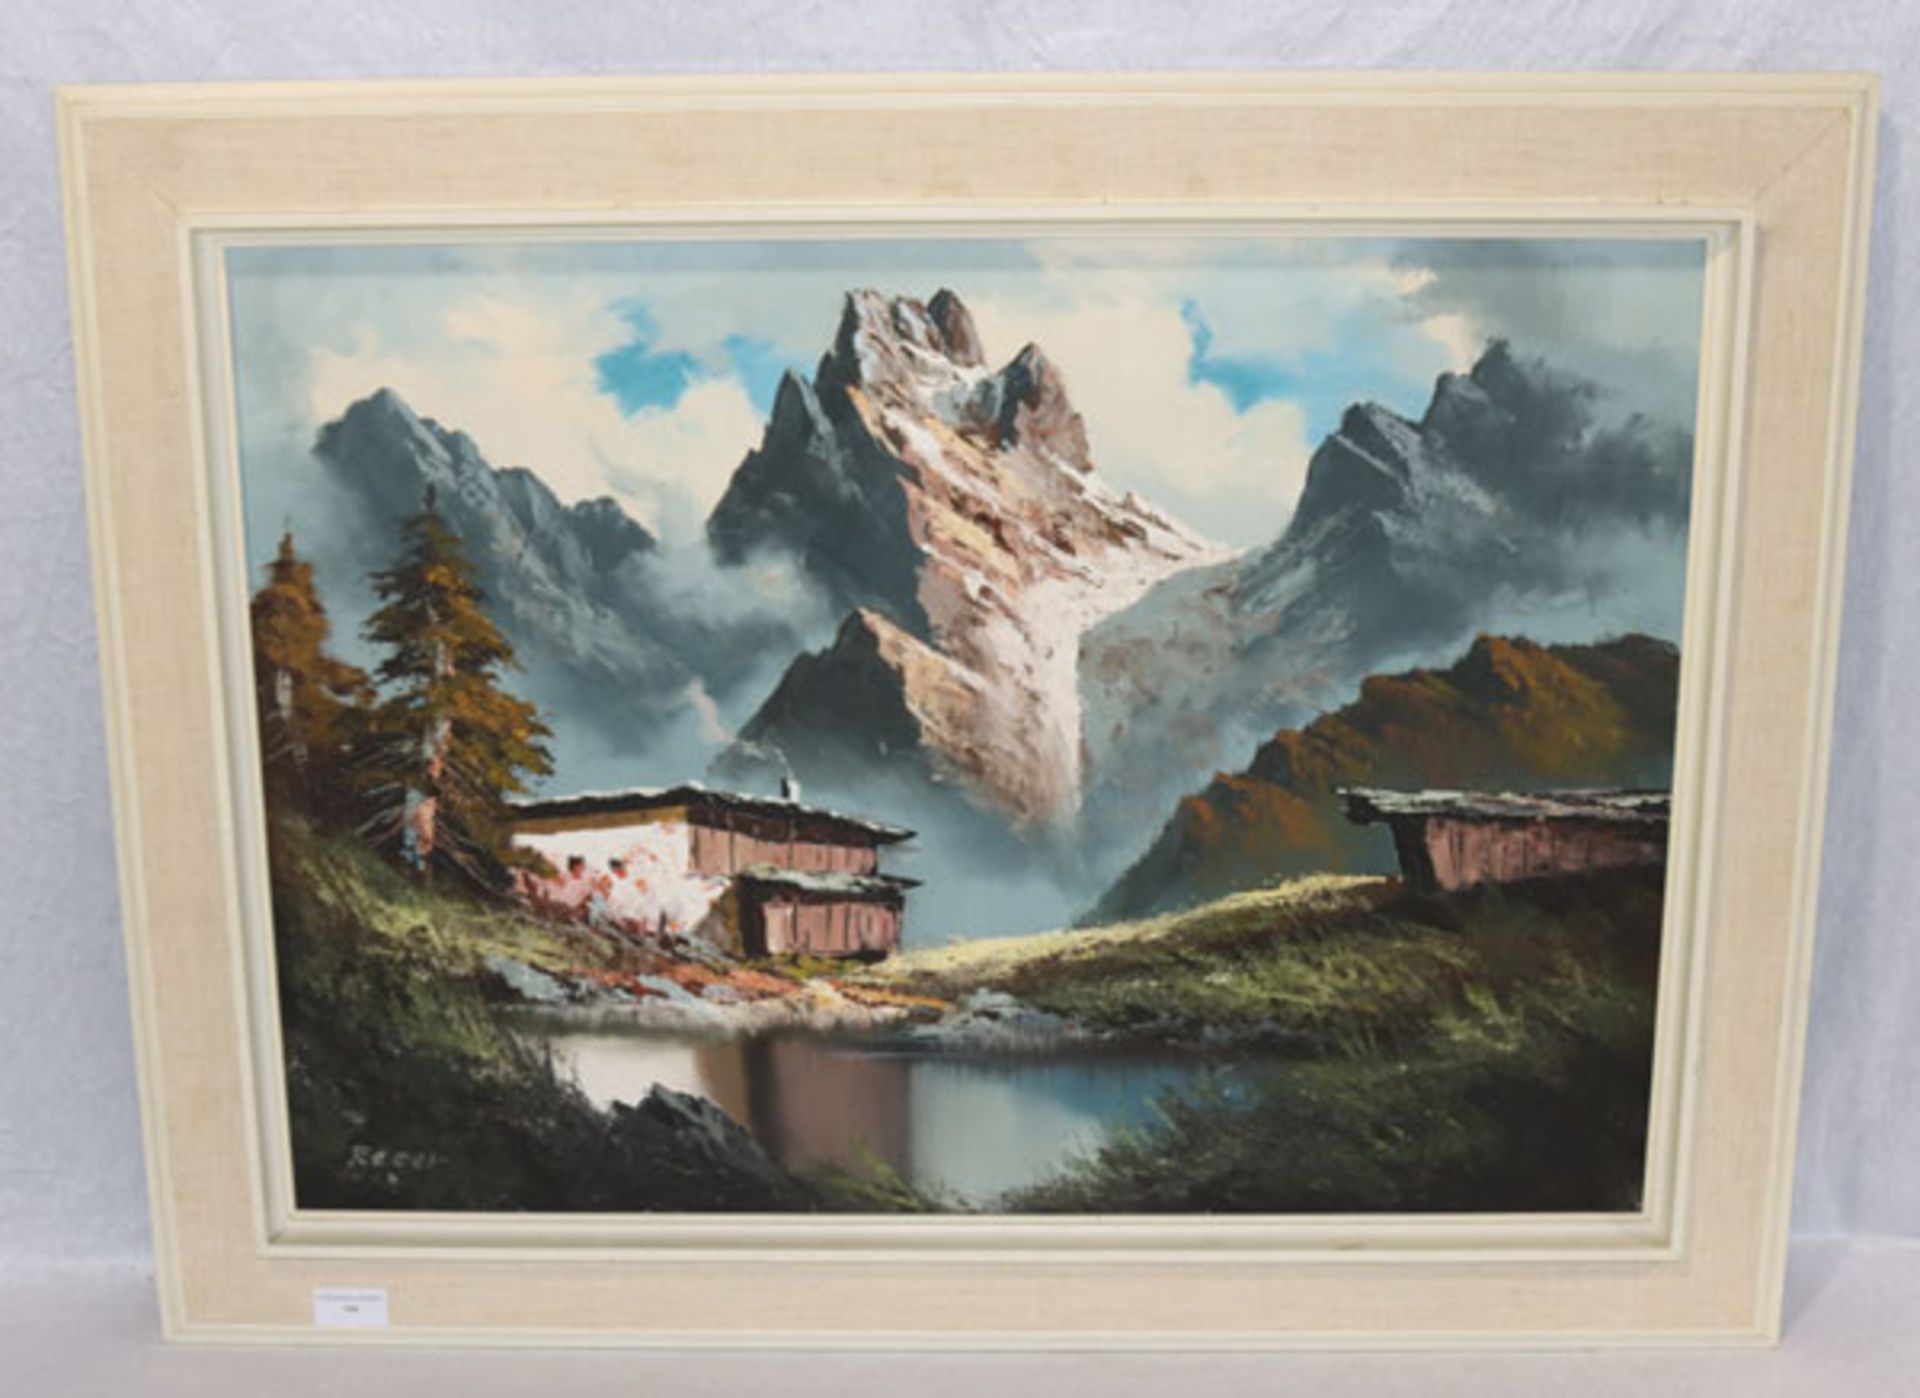 Gemälde ÖL/LW 'Wilder Kaiser mit Bauernhaus', signiert Reger, gerahmt, Rahmen leicht beschädigt,